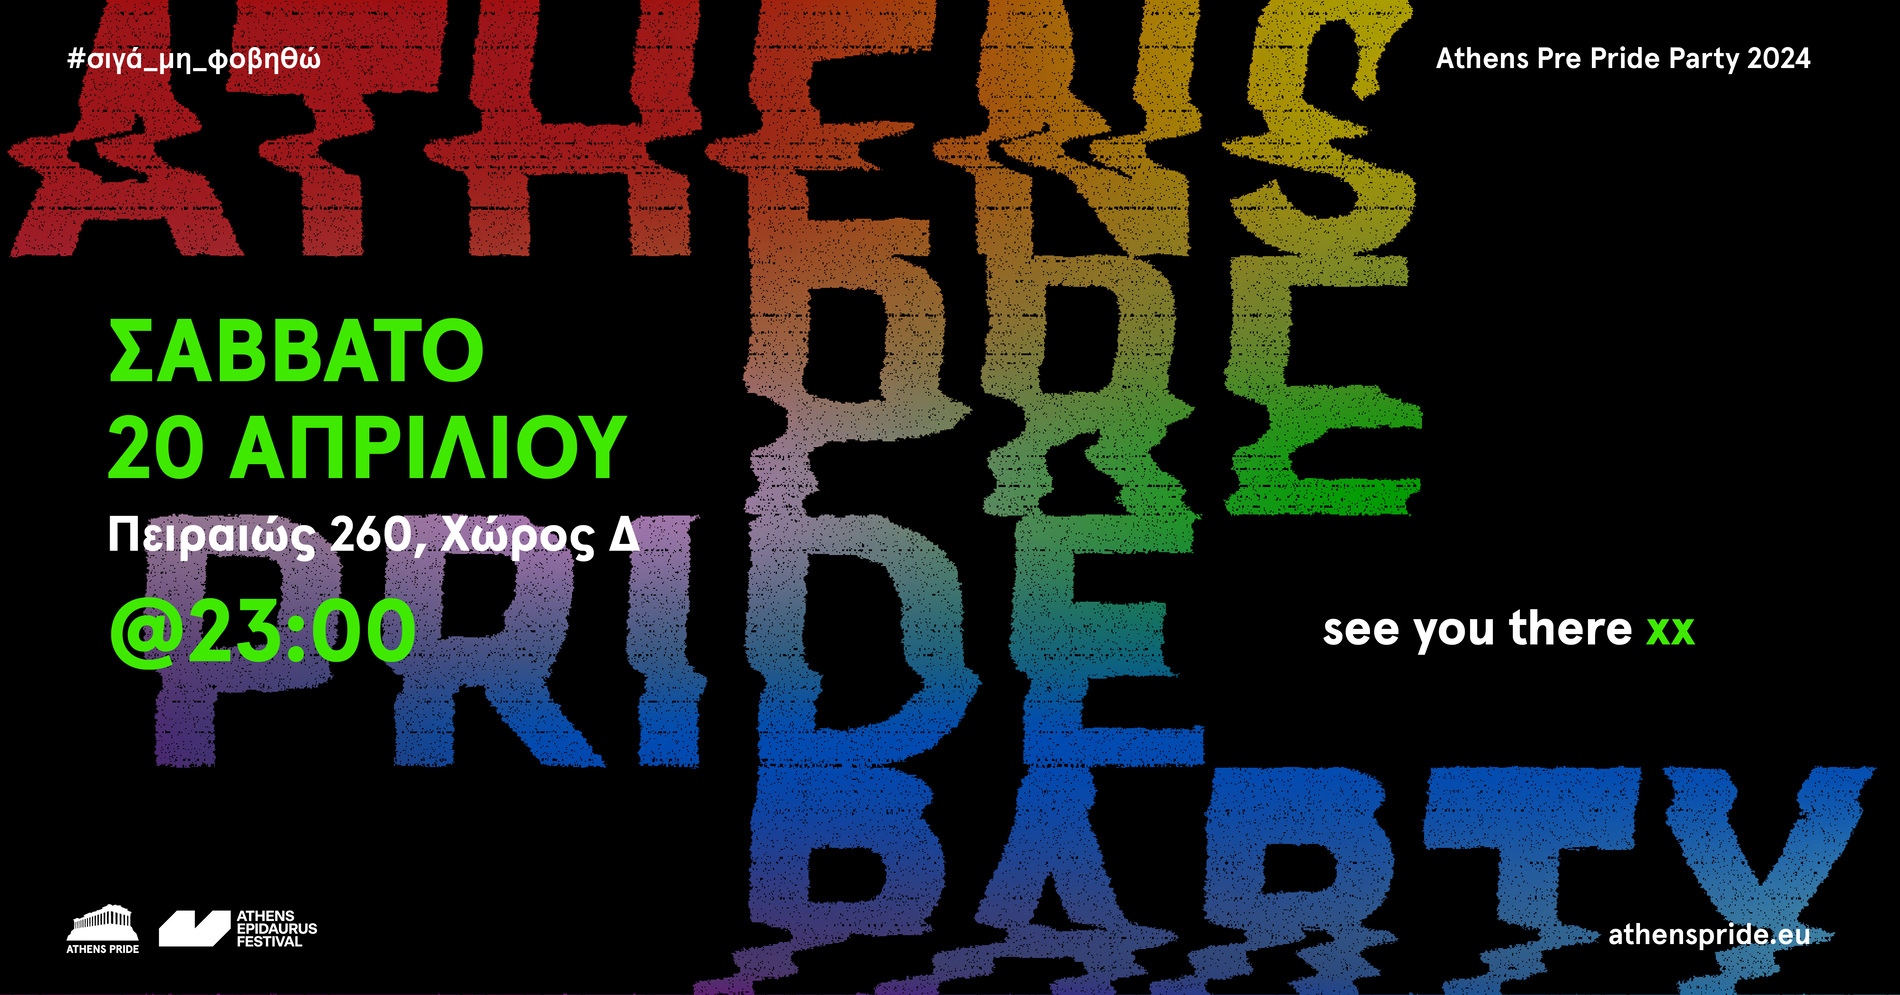 Ανοιχτό κάλεσμα για προτάσεις συμμετοχής στα Events του Athens Pride 2024.Προθεσμία 31 Μαρτίου